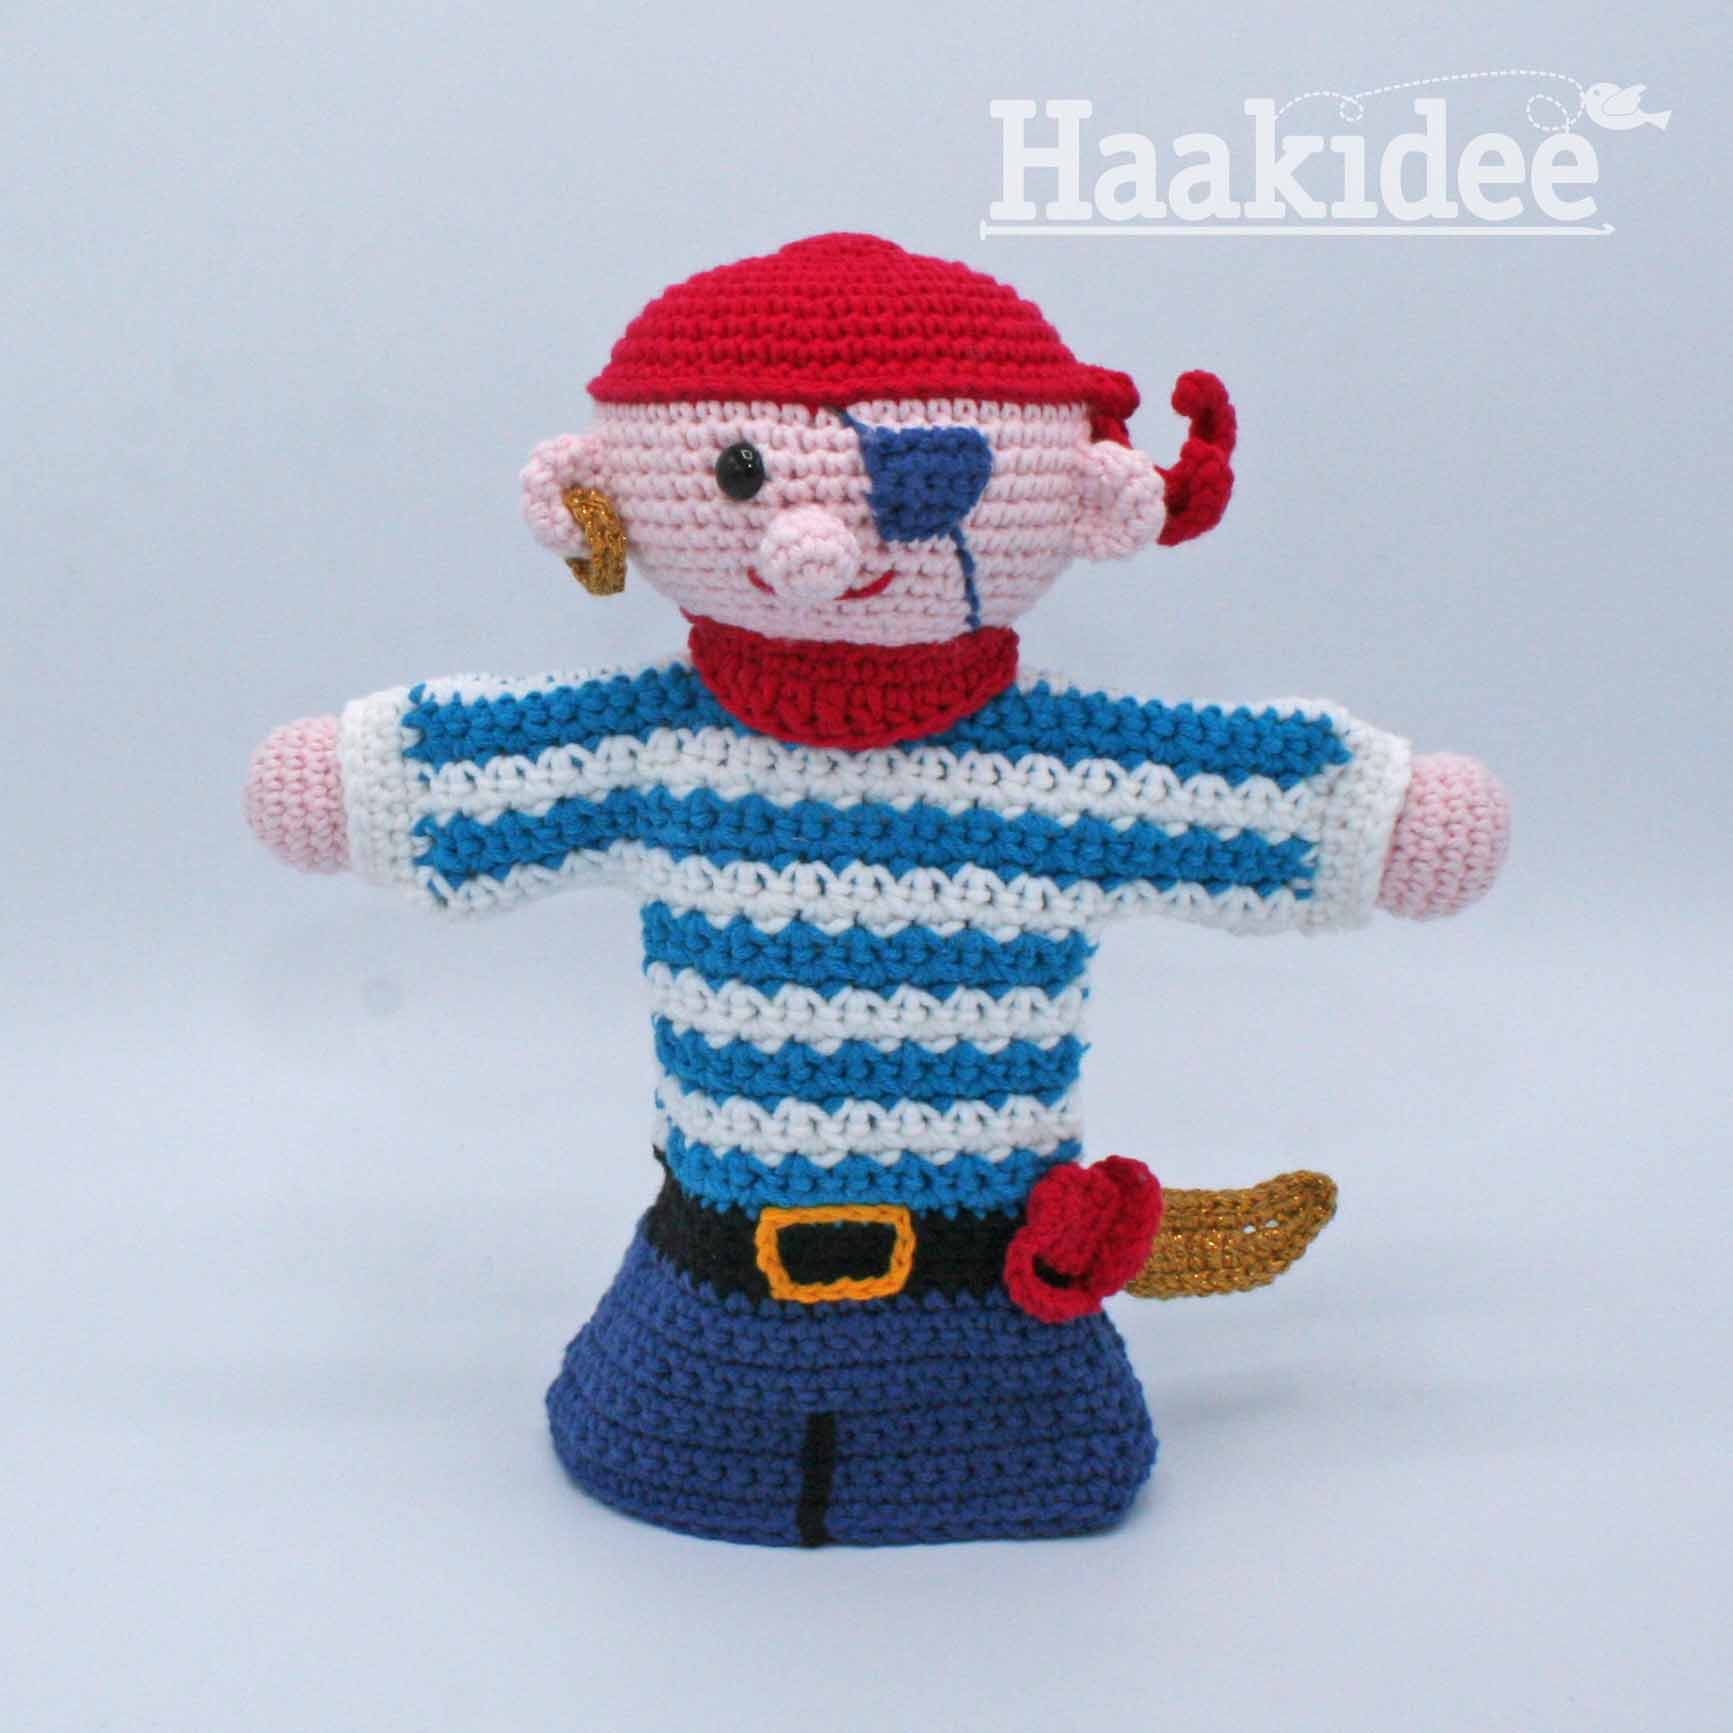 hardop Advertentie Grace Haakpatroon Handpop Pim Piraat - Haakidee